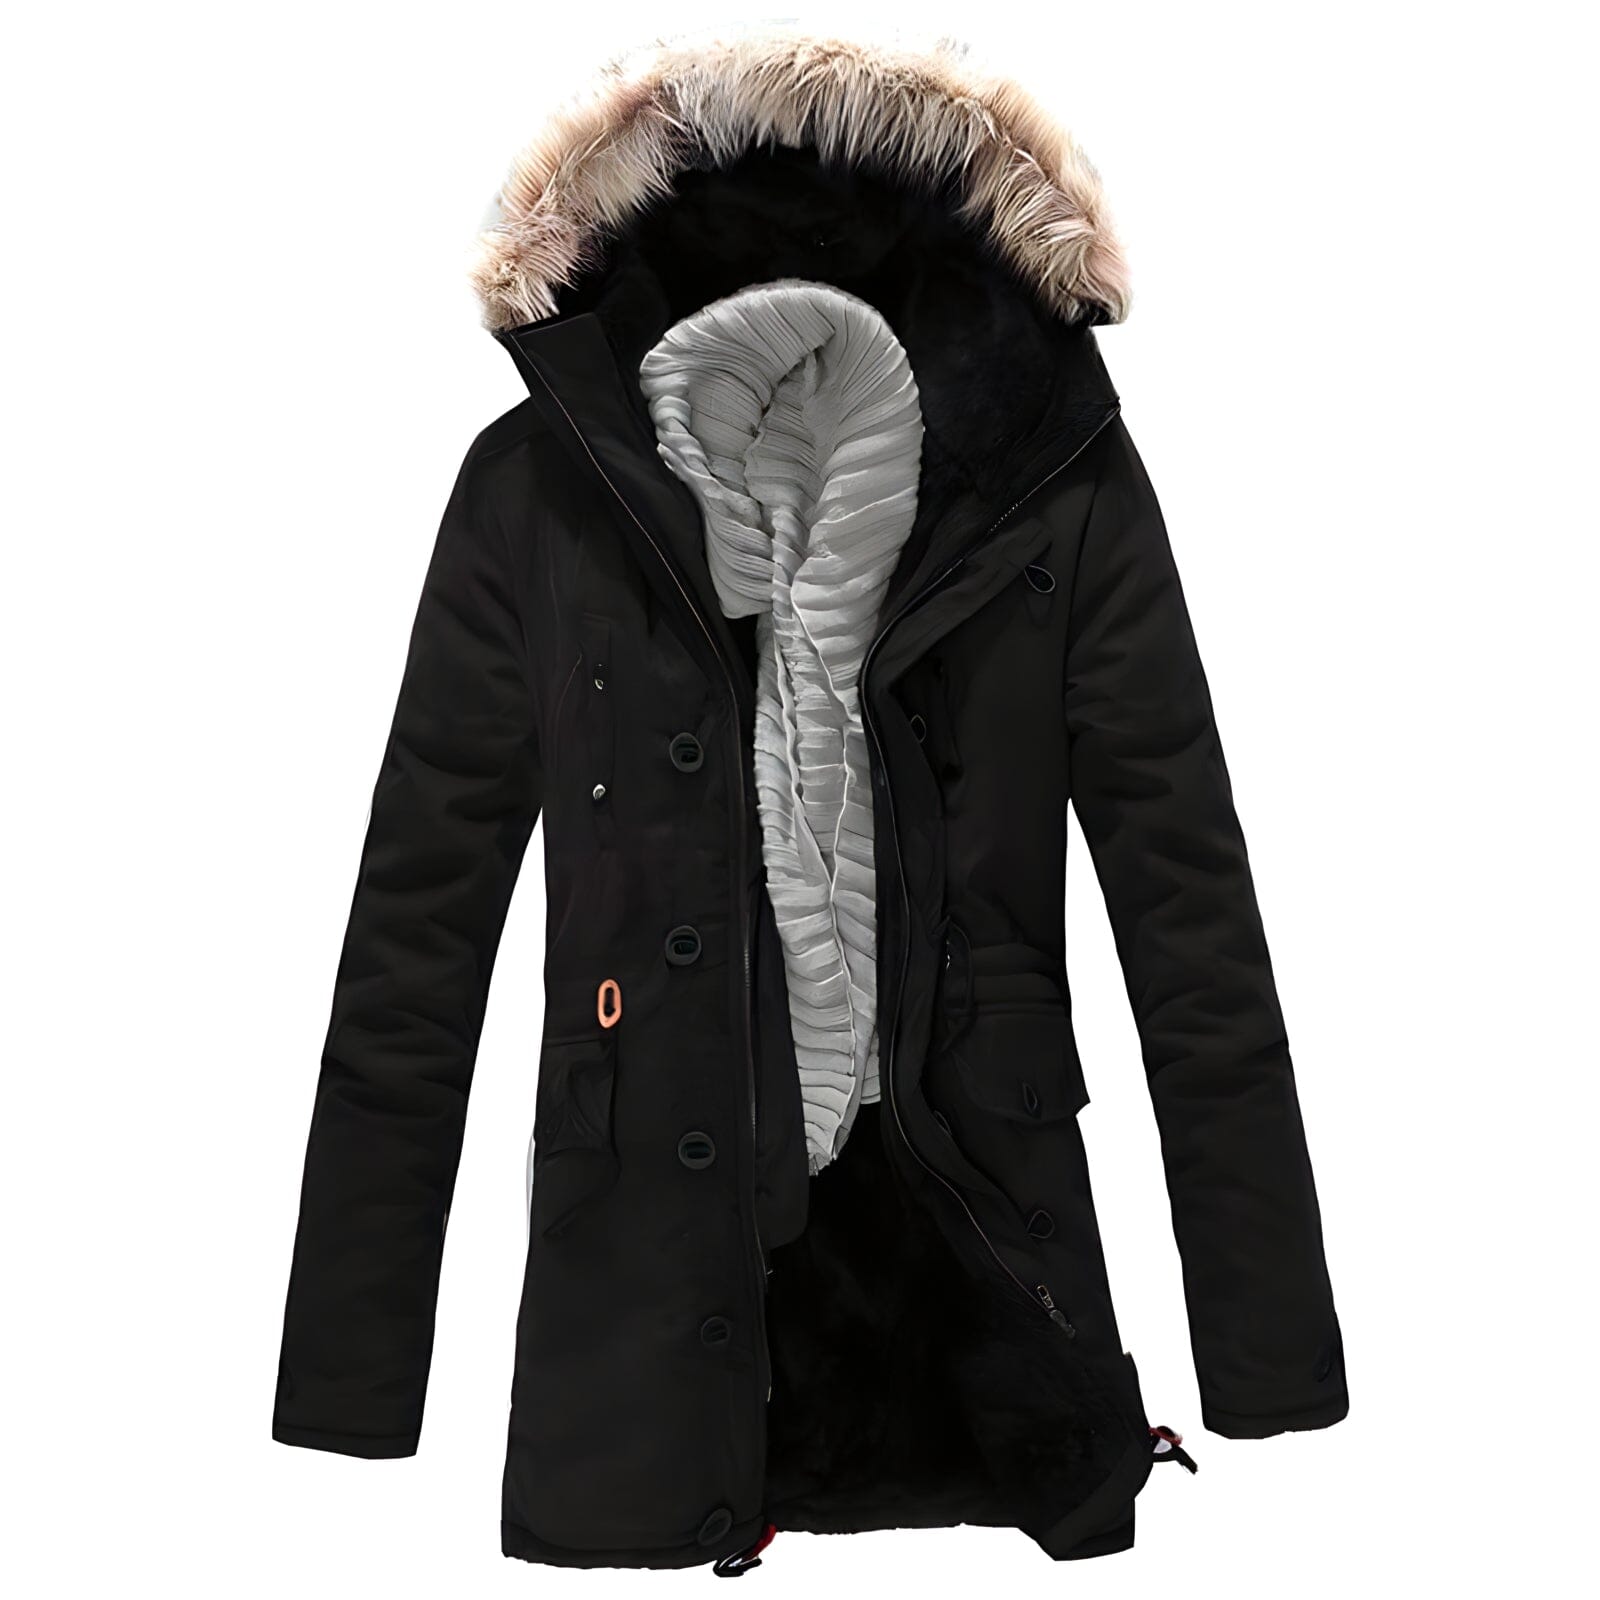 The Summit Faux Fur Winter Jacket - Multiple Colors Shop1959047 Store Black XS 